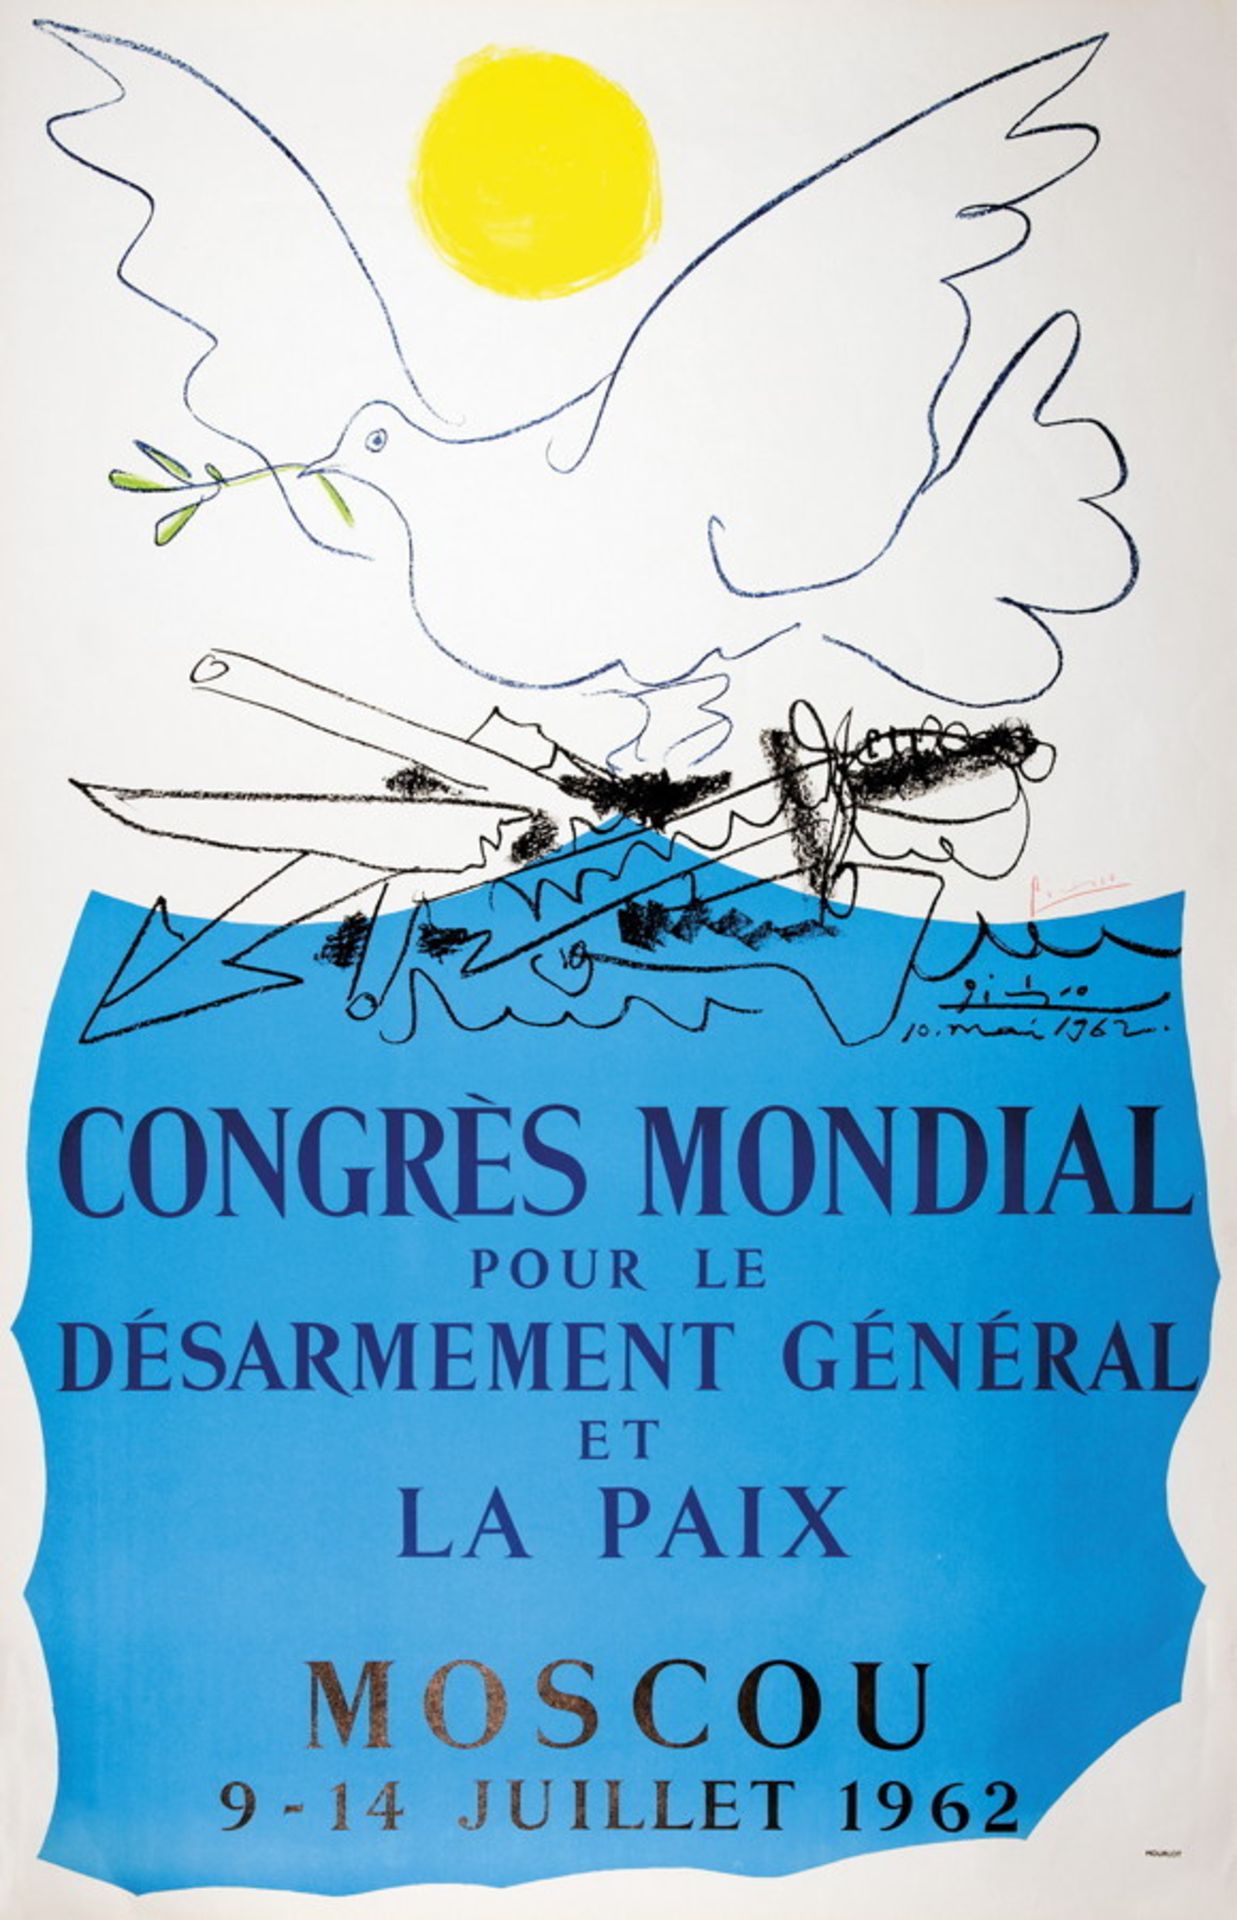 Pablo Picasso. Congrès Mondial pour le Désarmement général pour la Paix. Moscou 9  14 Juillet 1962.